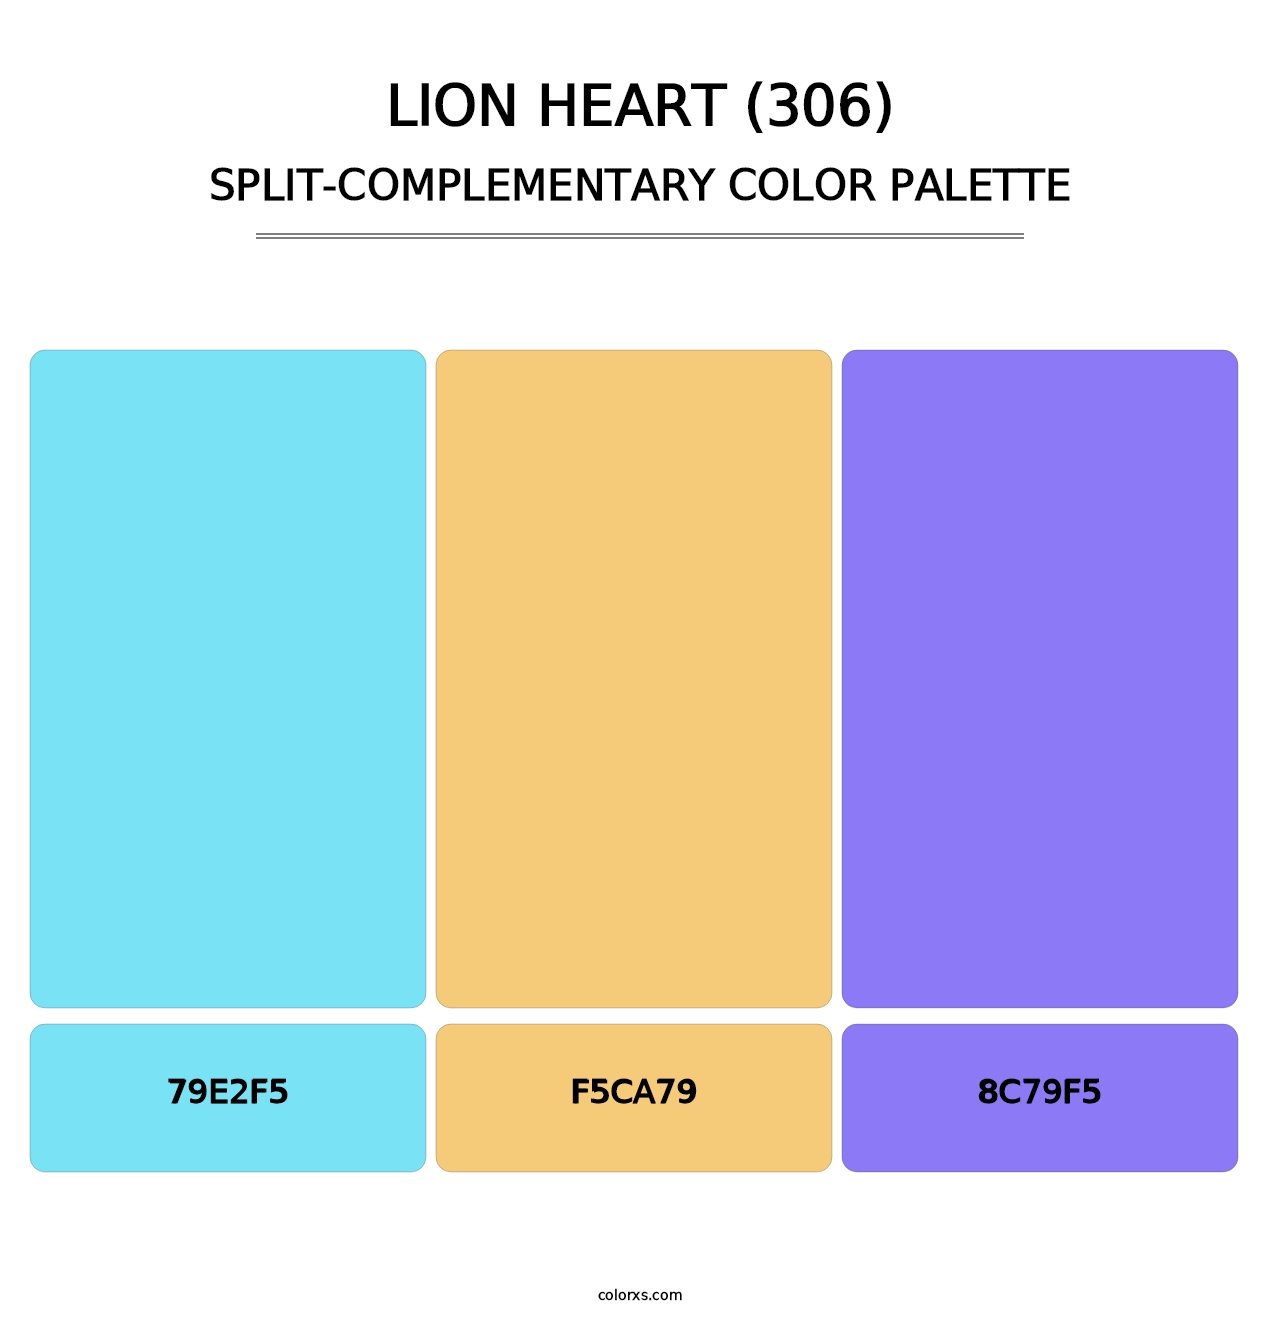 Lion Heart (306) - Split-Complementary Color Palette